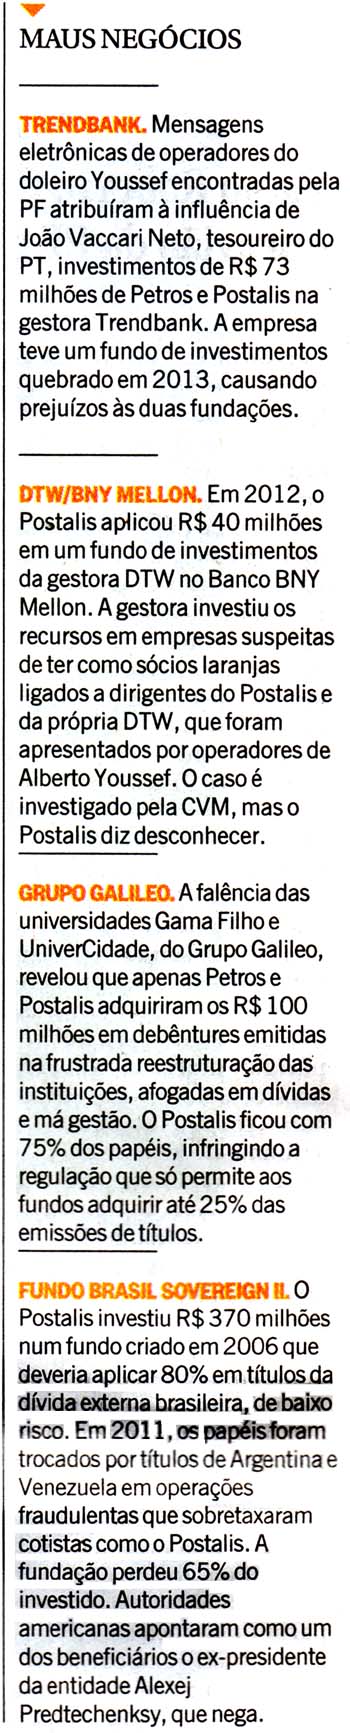 O Globo - 01/10/14 - Petros e Postalis: maus negcios